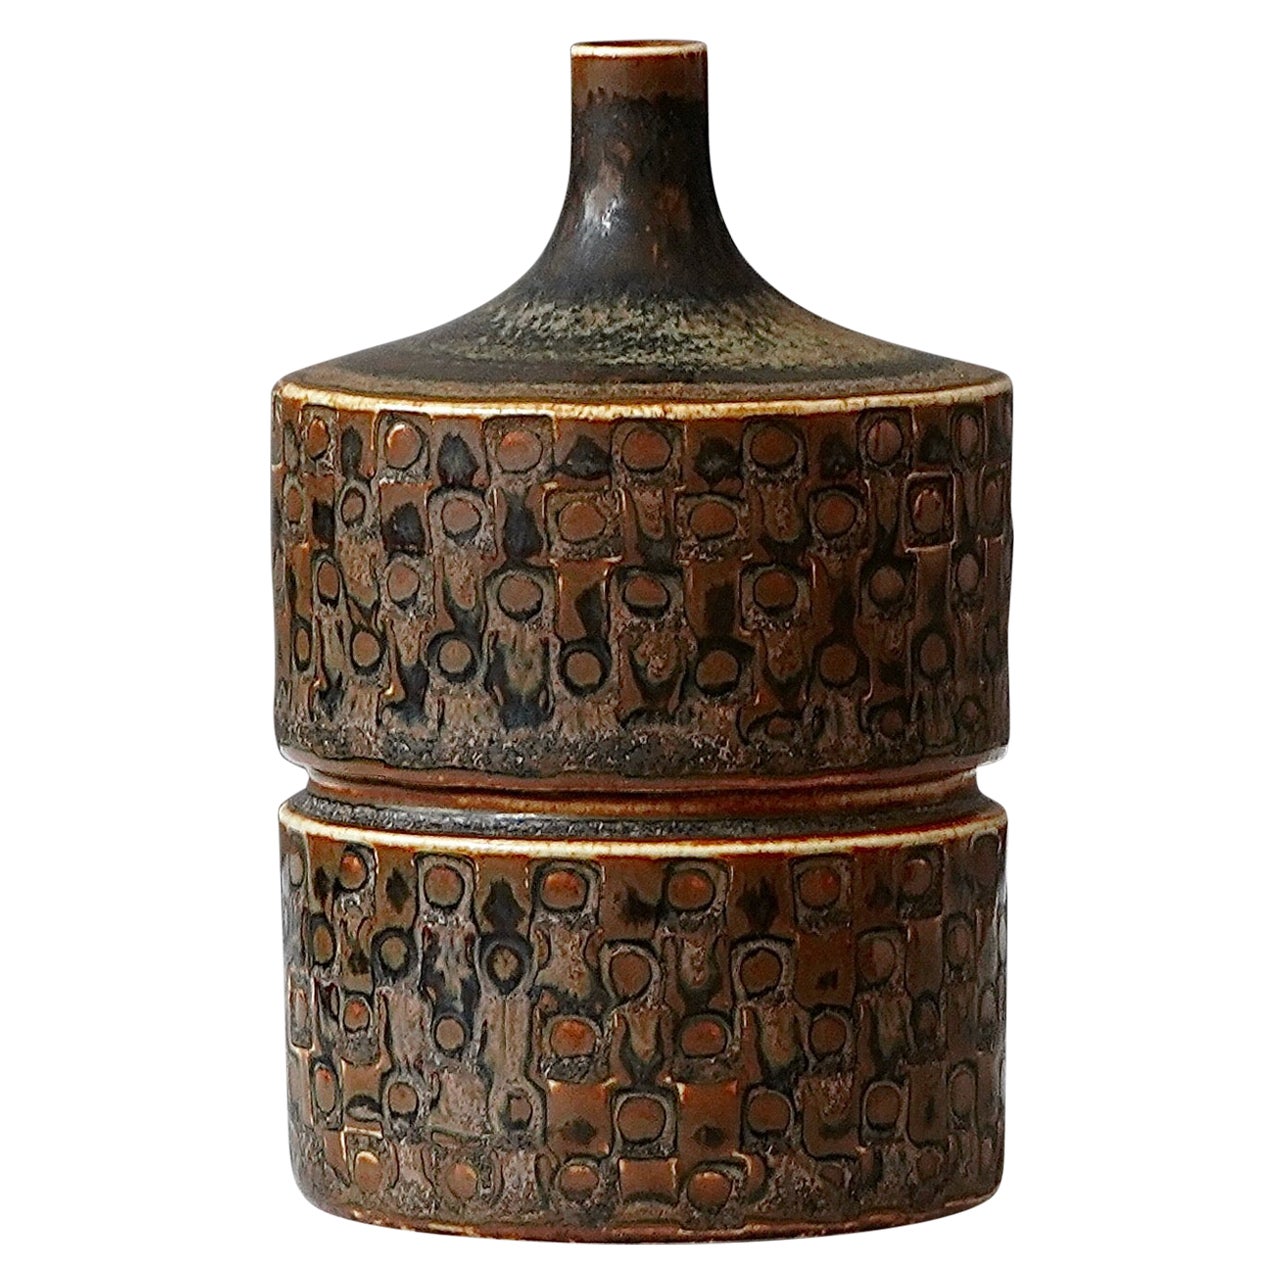 Unique Stoneware Vase by Stig Lindberg for Gustavsberg Studio, Sweden, 1962 For Sale